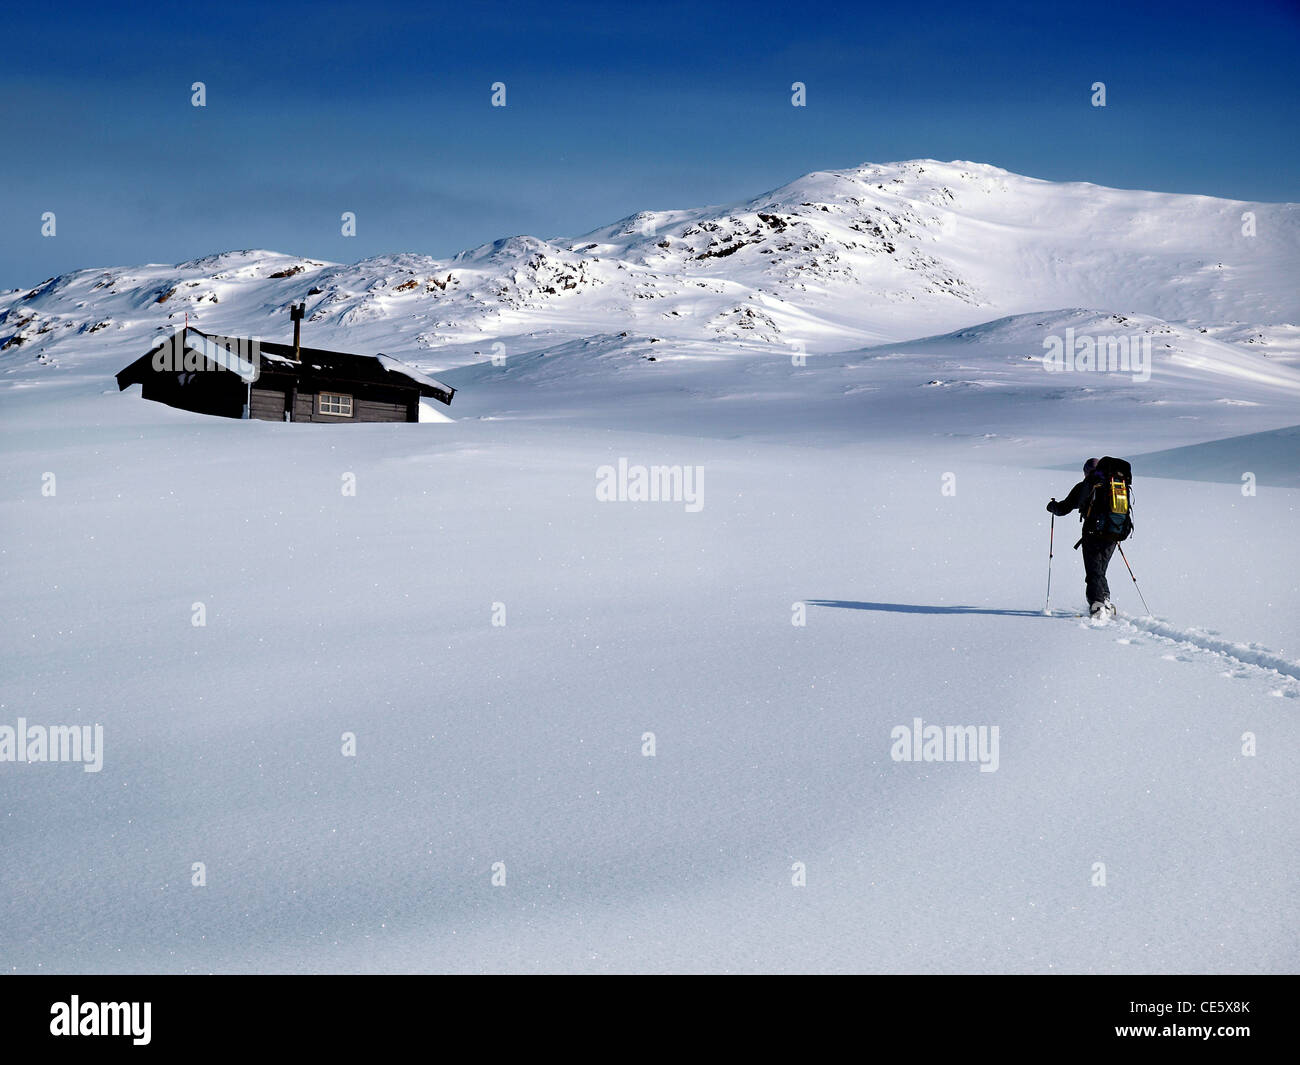 Un tourer ski norvégien à l'approche d'un refuge de montagne en hiver, la Norvège Banque D'Images